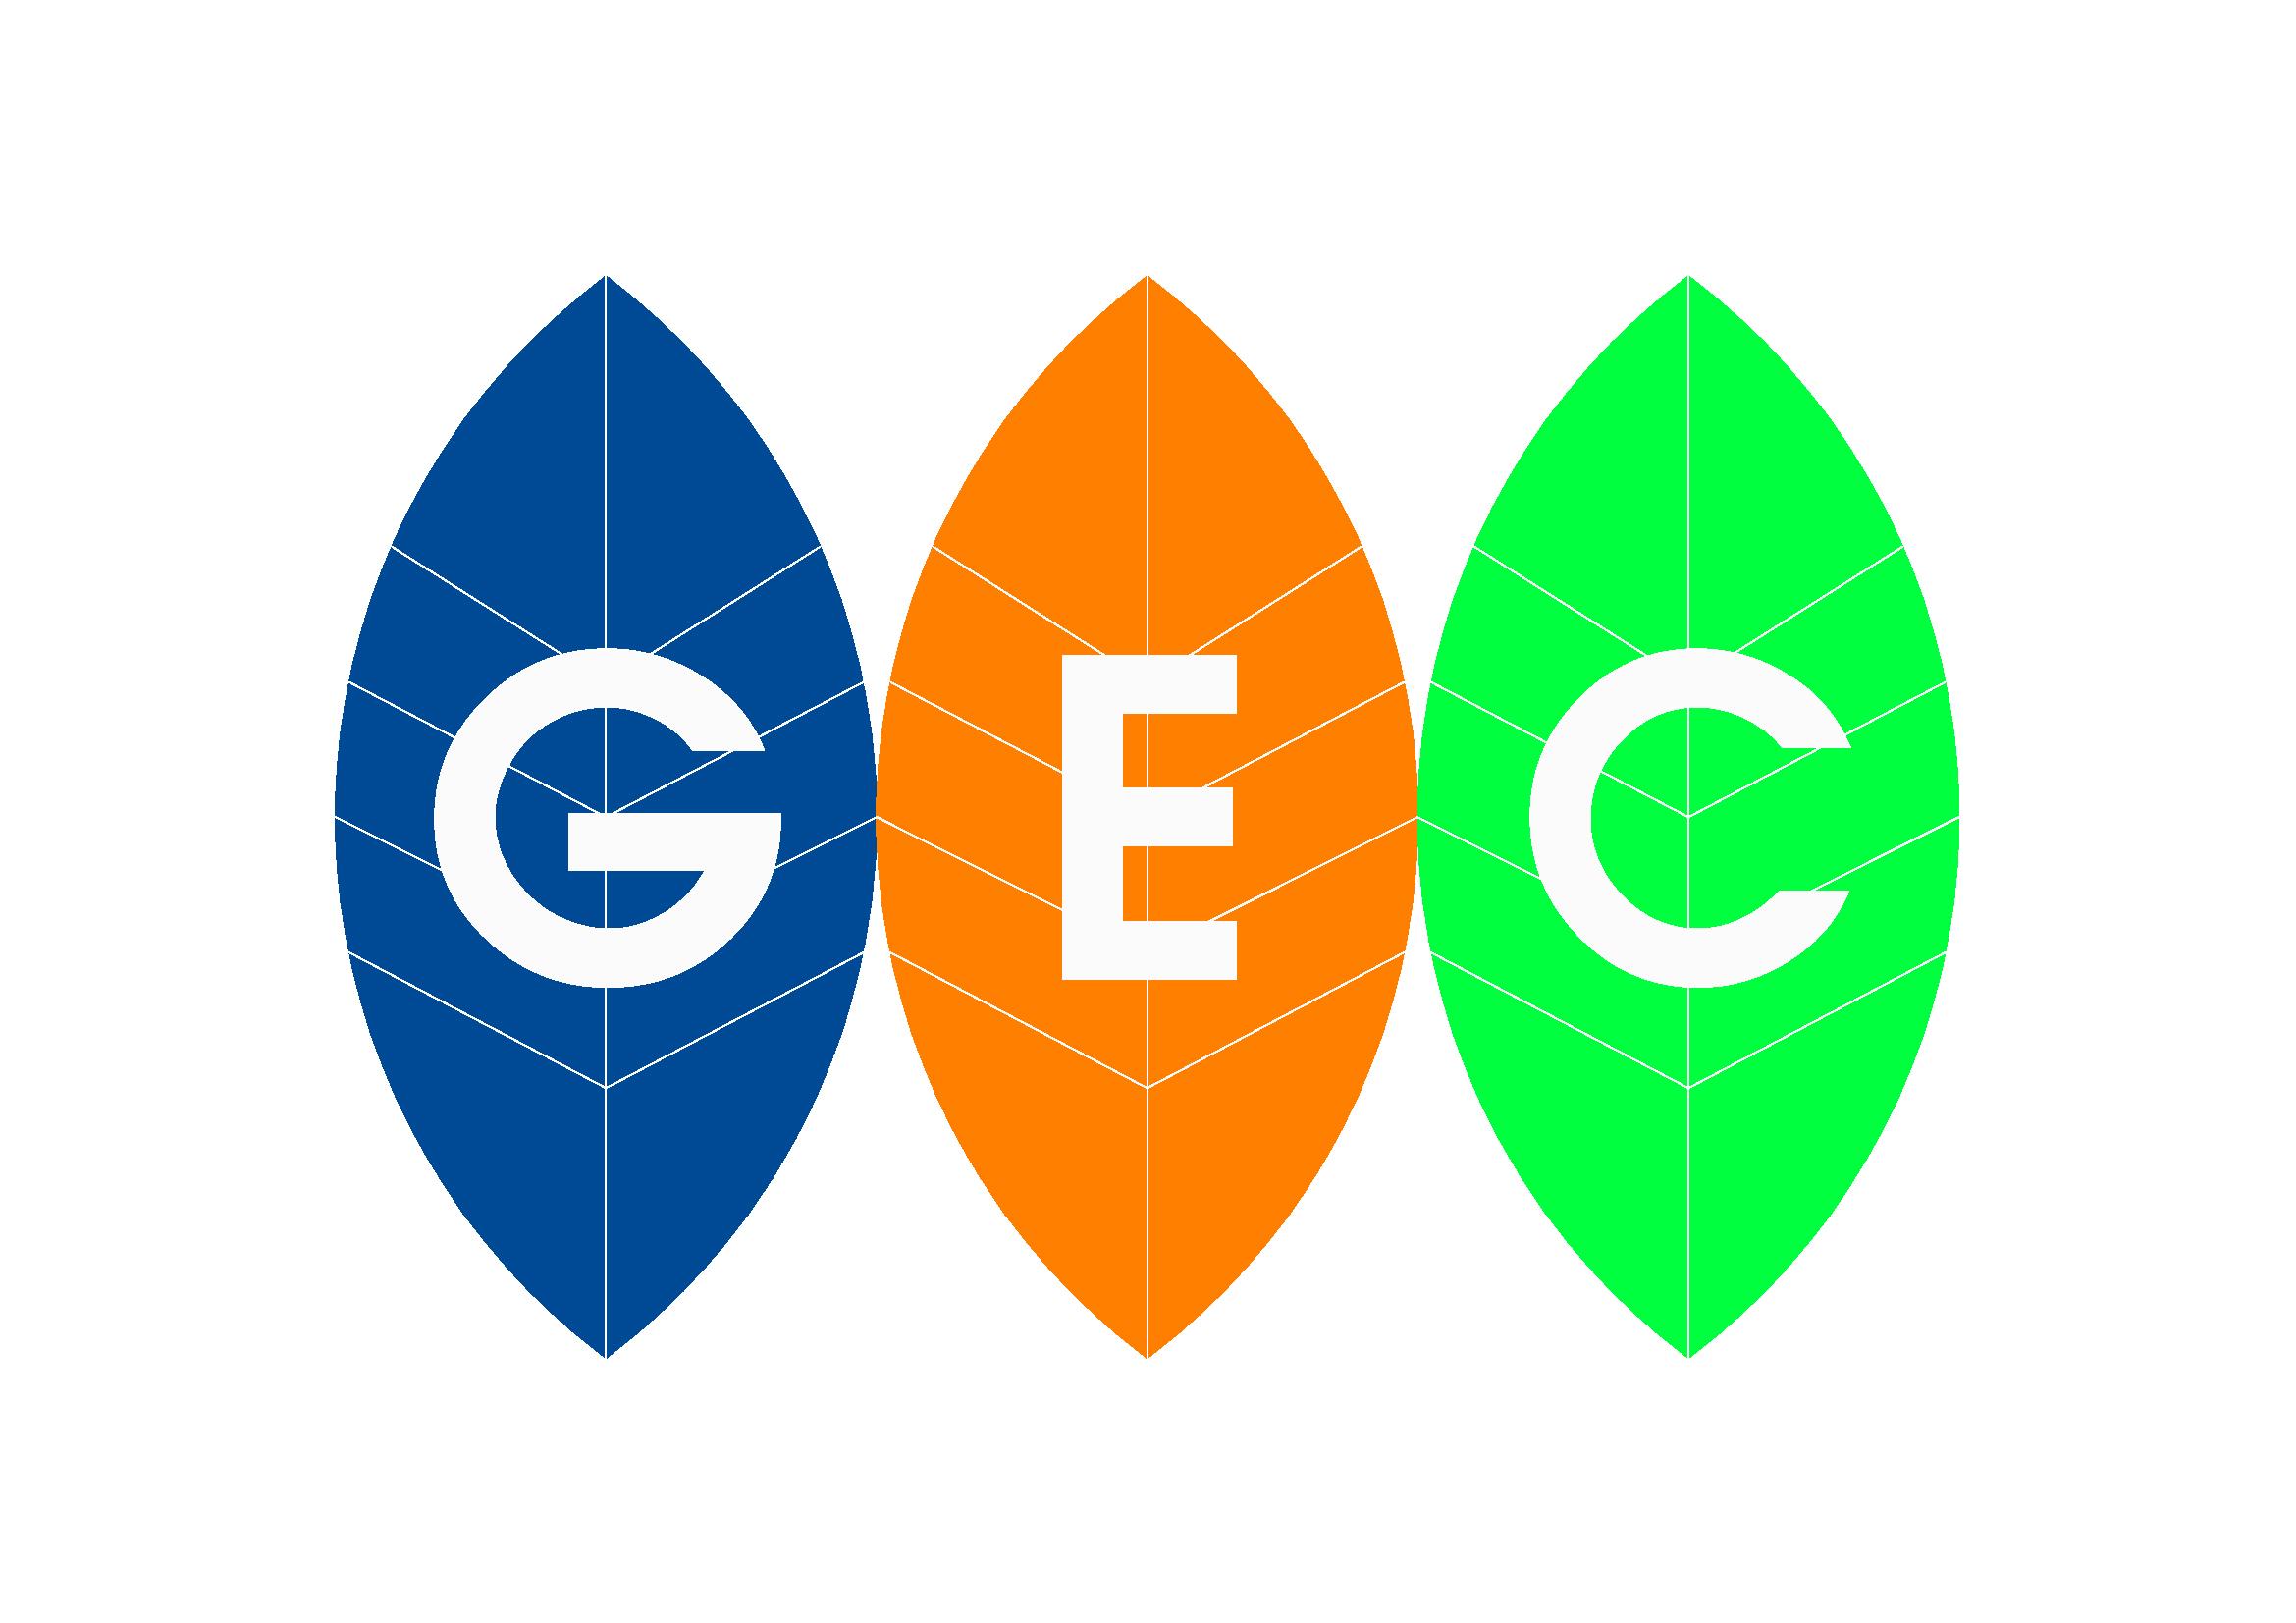  				Công ty cổ phần đầu tư và phát triển công nghệ GEC				